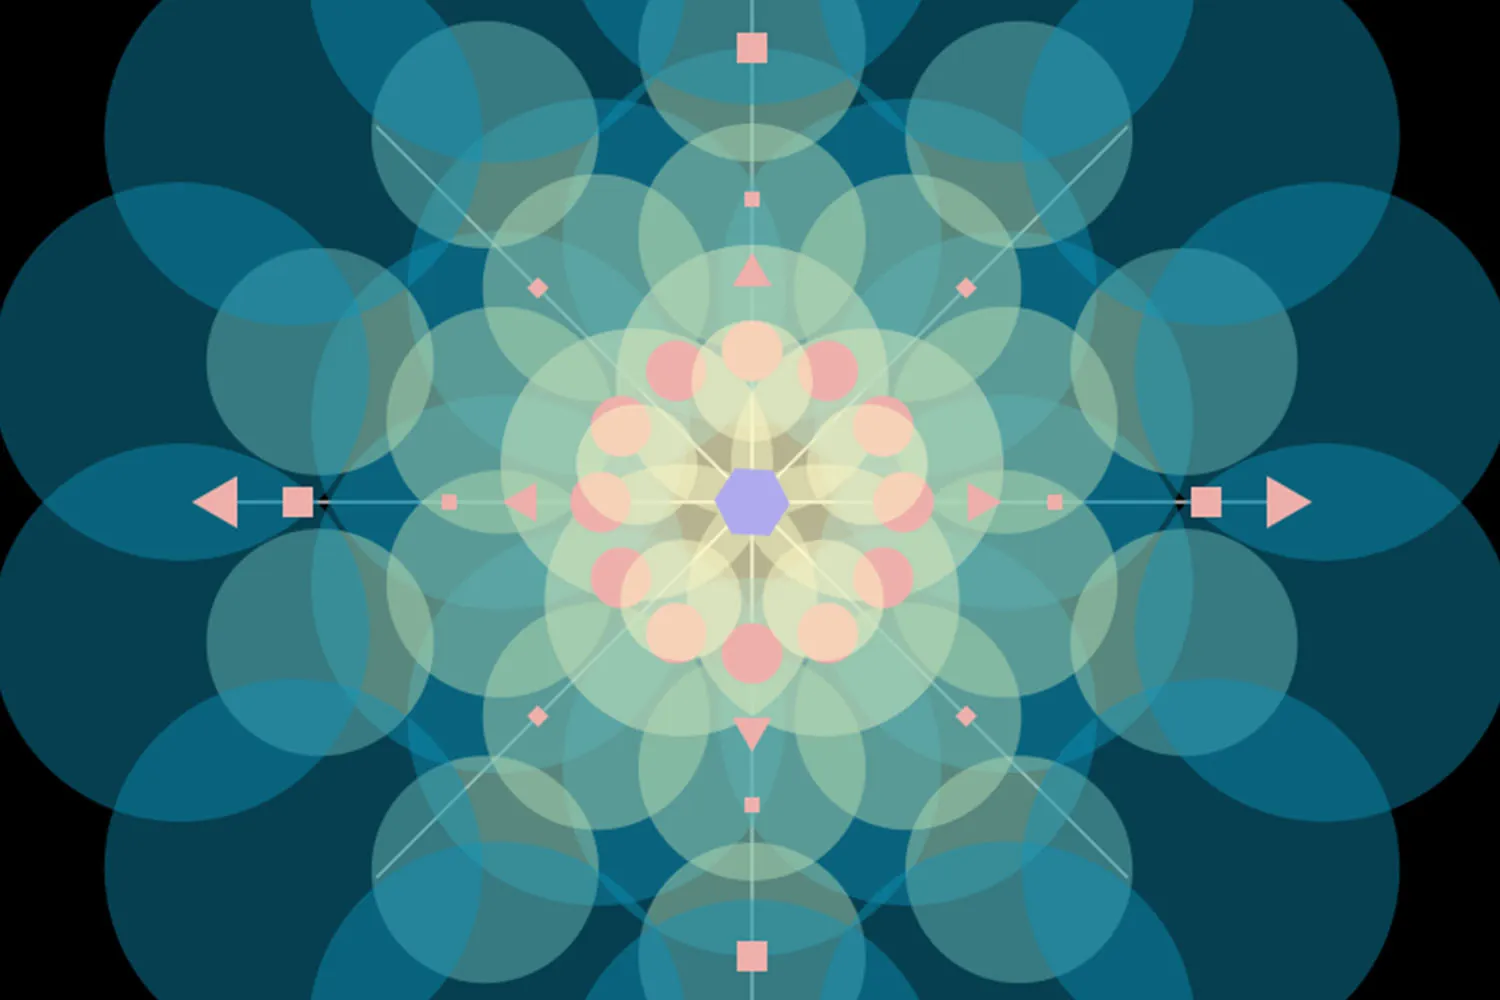 symmetrical geometric patterns